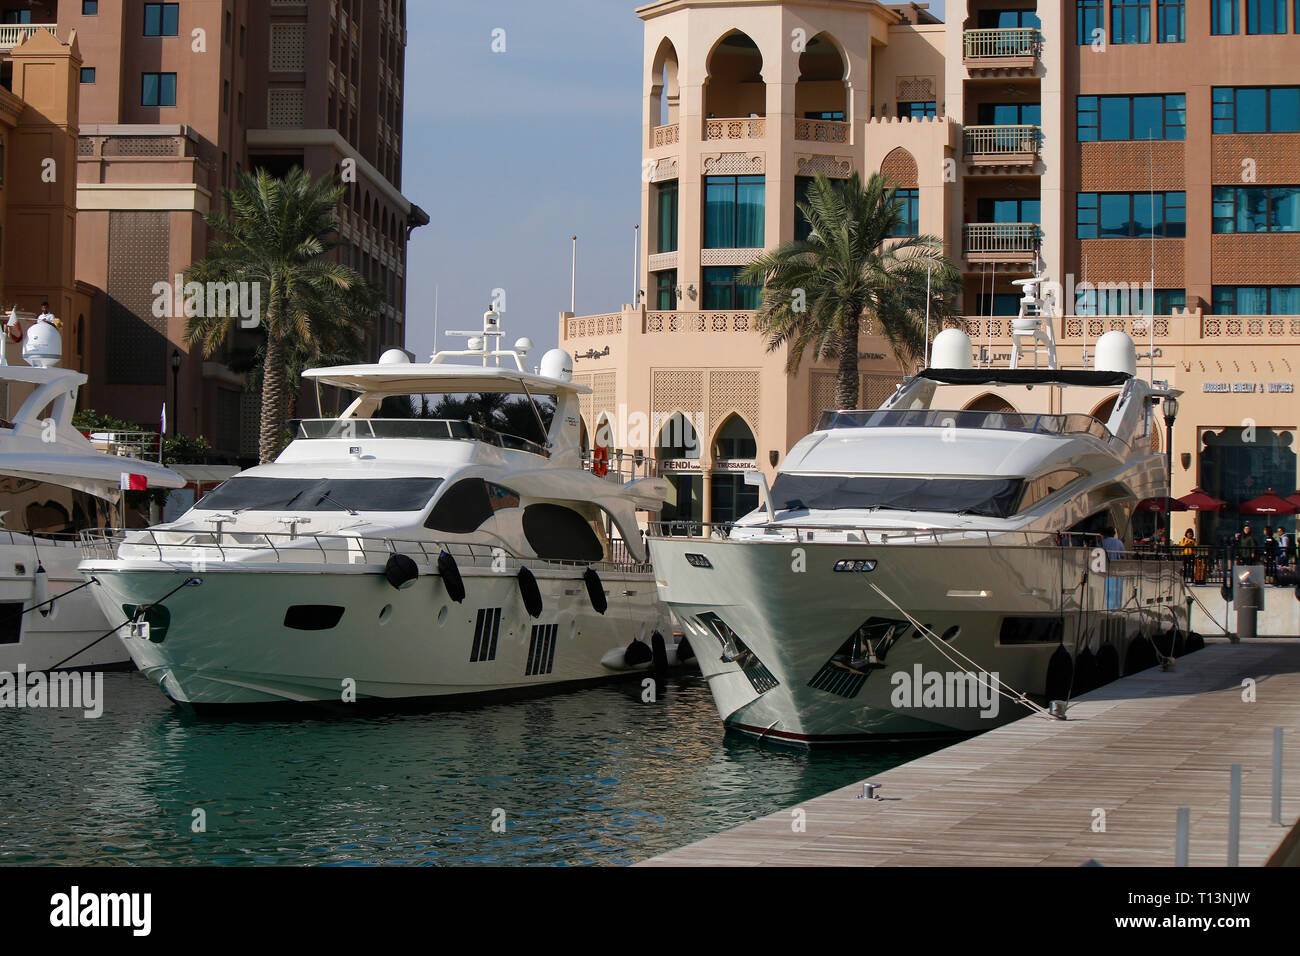 Impressionen: Yachten, Wolkenkratzer, Doha, Katar/ Qatar. Stock Photo